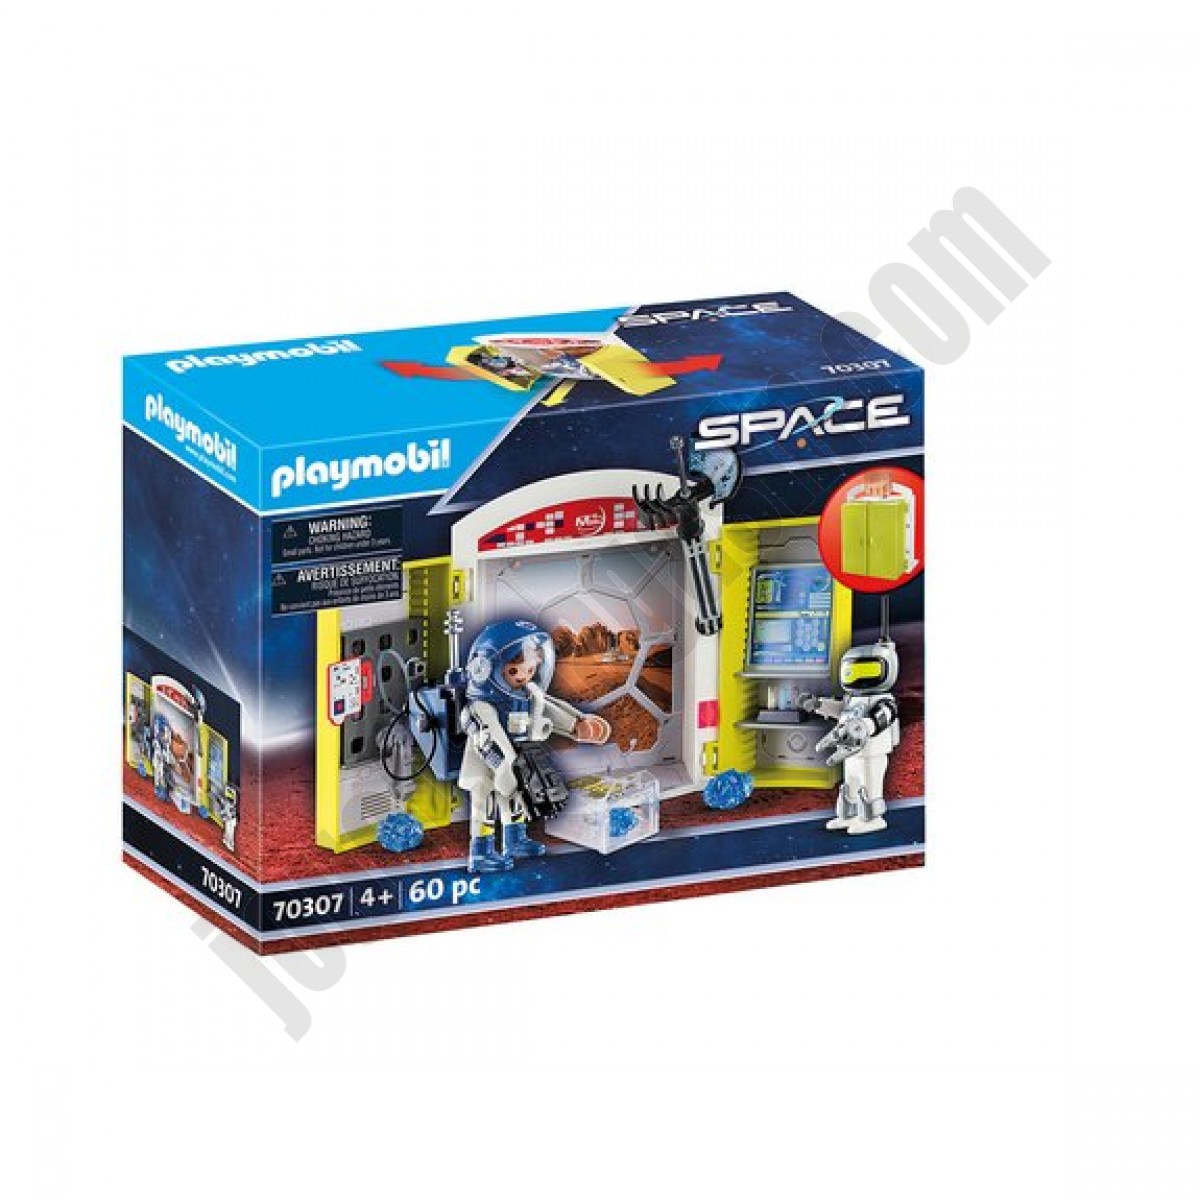 Coffre Base Spatiale Playmobil Space 70307 ◆◆◆ Nouveau - Coffre Base Spatiale Playmobil Space 70307 ◆◆◆ Nouveau